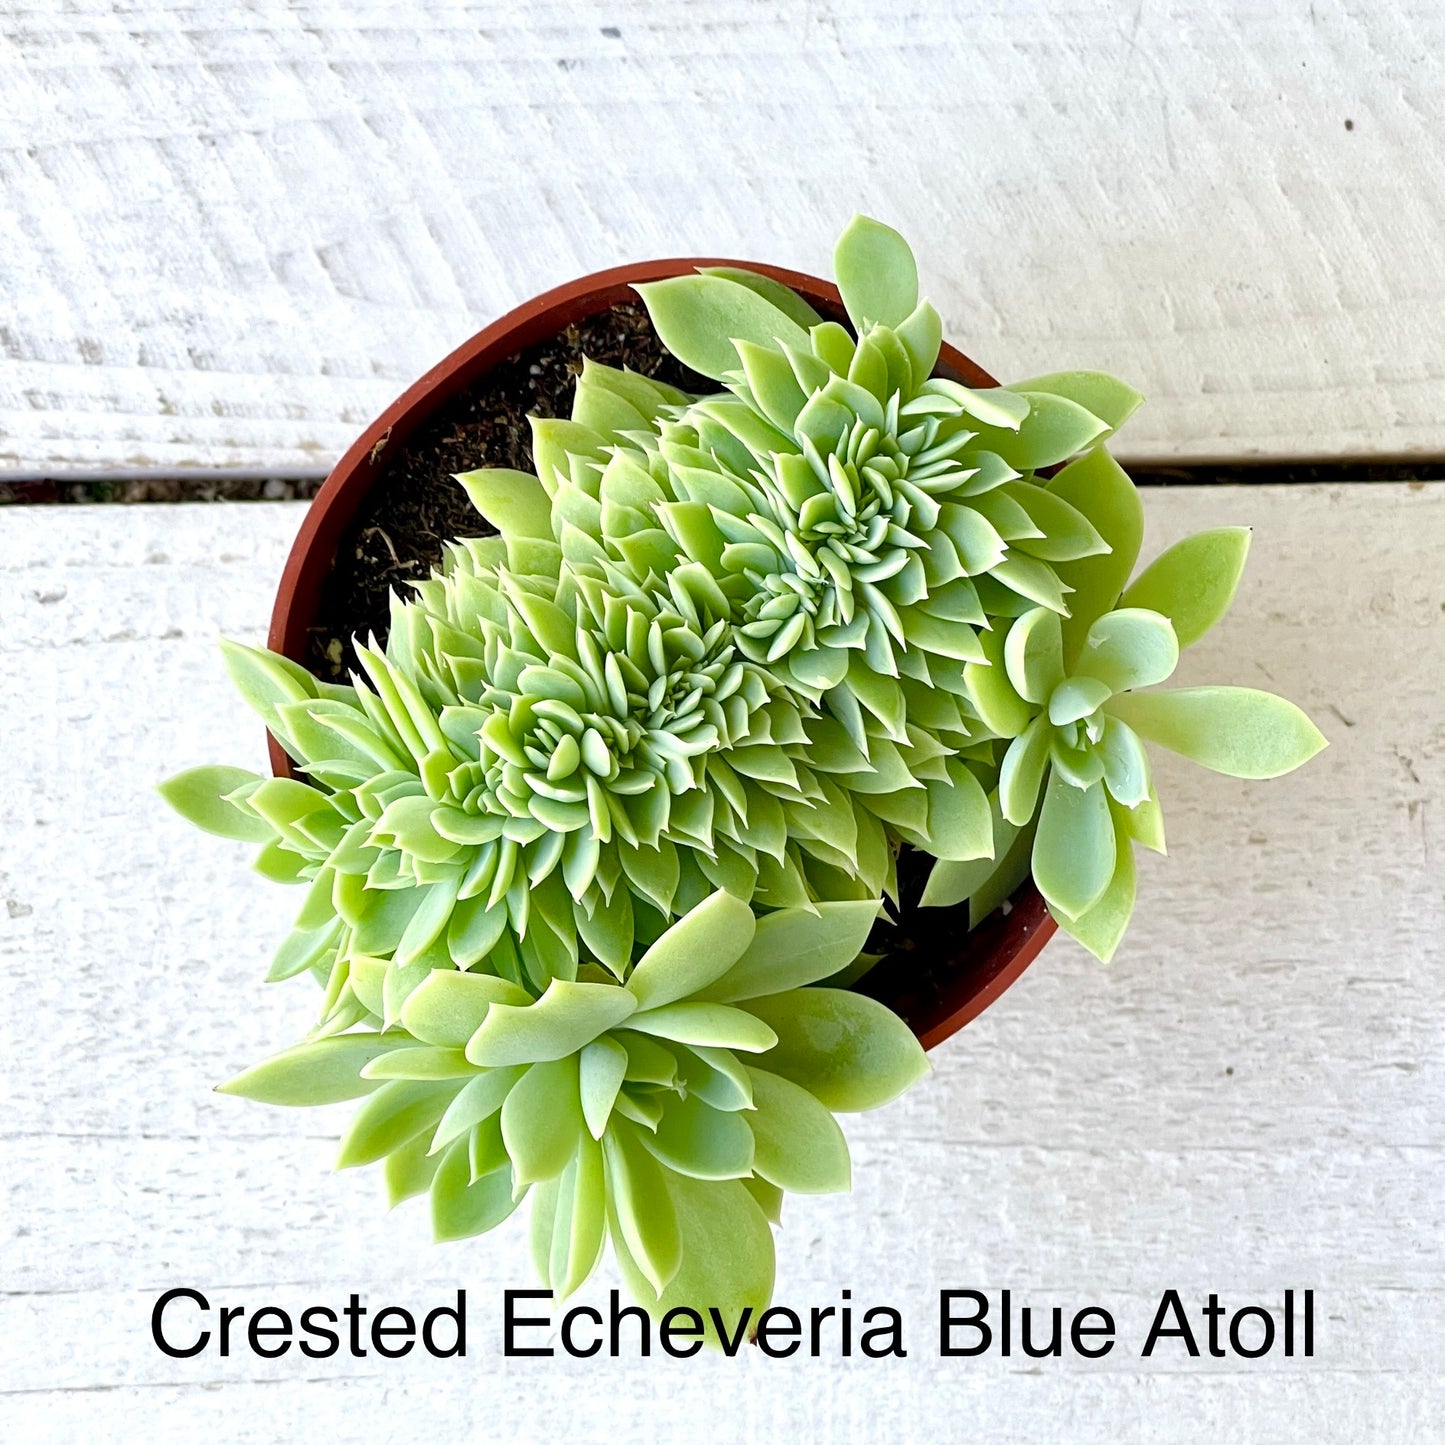 Rare Crested Echeveria Blue Atoll